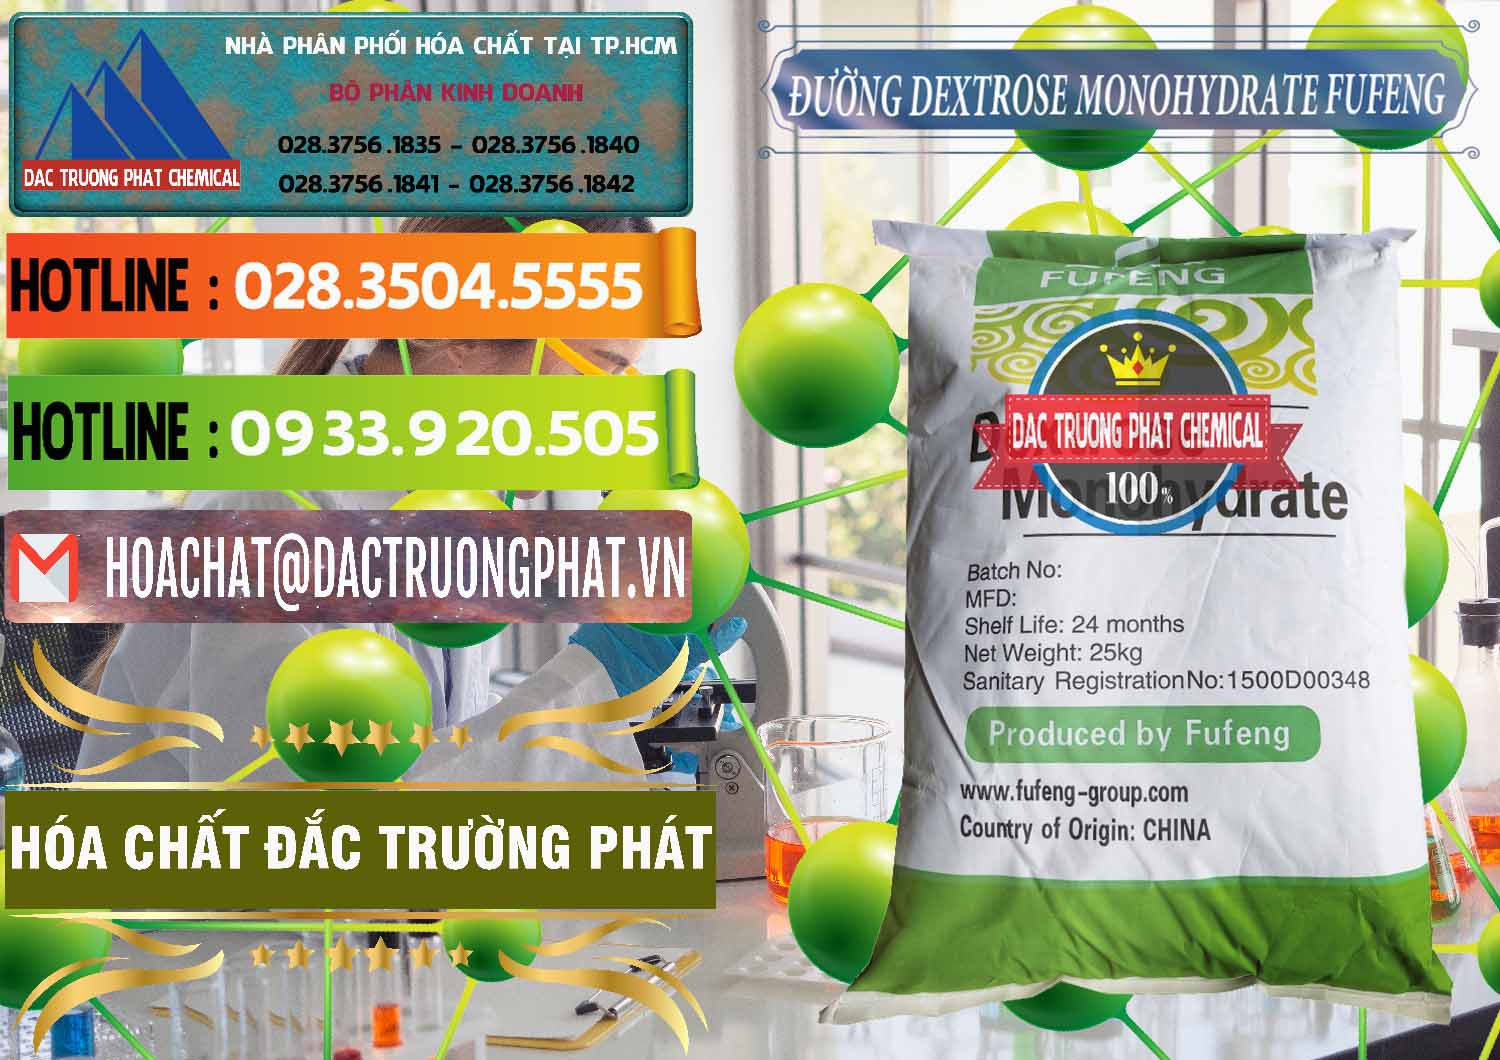 Nơi chuyên bán và cung cấp Đường Dextrose Monohydrate Food Grade Fufeng Trung Quốc China - 0223 - Cty kinh doanh và cung cấp hóa chất tại TP.HCM - cungcaphoachat.com.vn